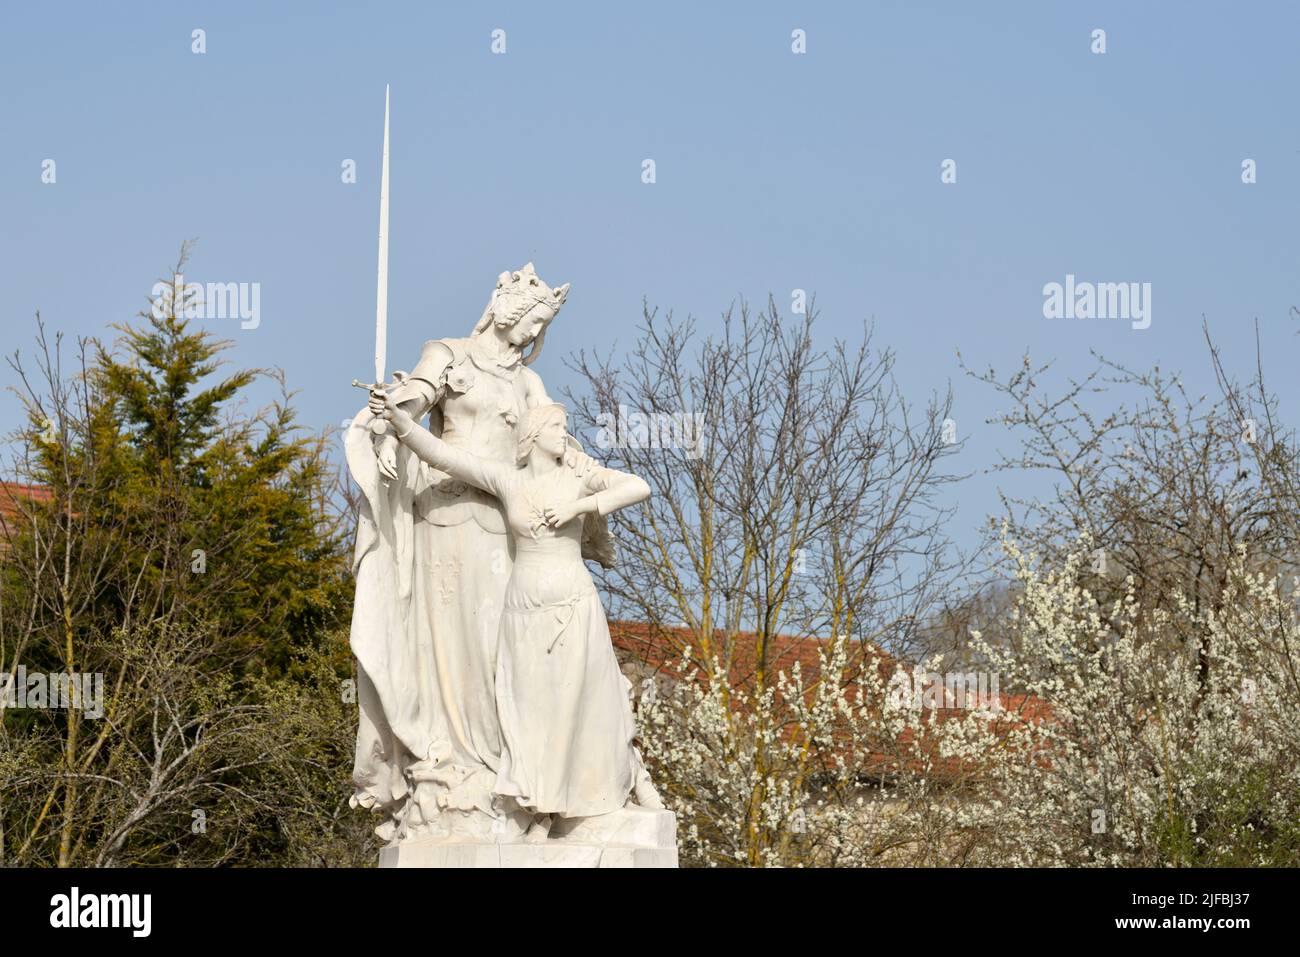 Francia, Vosgos, Domremy la Pucelle, lugar de nacimiento de Juana de Arco, lugar de nacimiento de Jeanne, estatua de Jeanne d'Arc Foto de stock